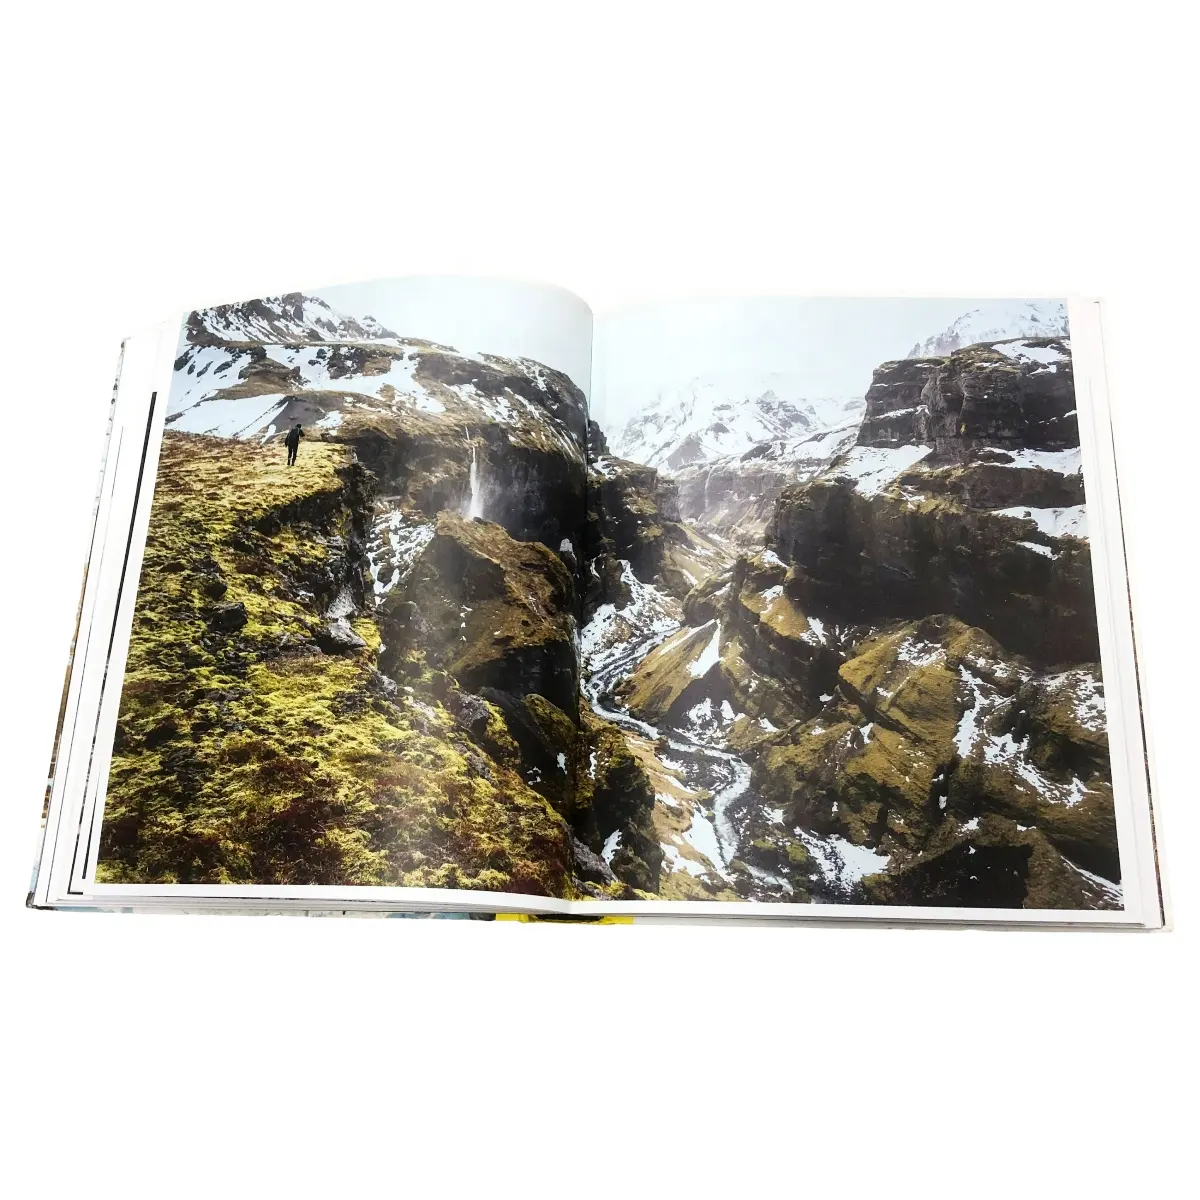 Pencetakan majalah Glossy cetak buku foto dewasa kualitas tinggi